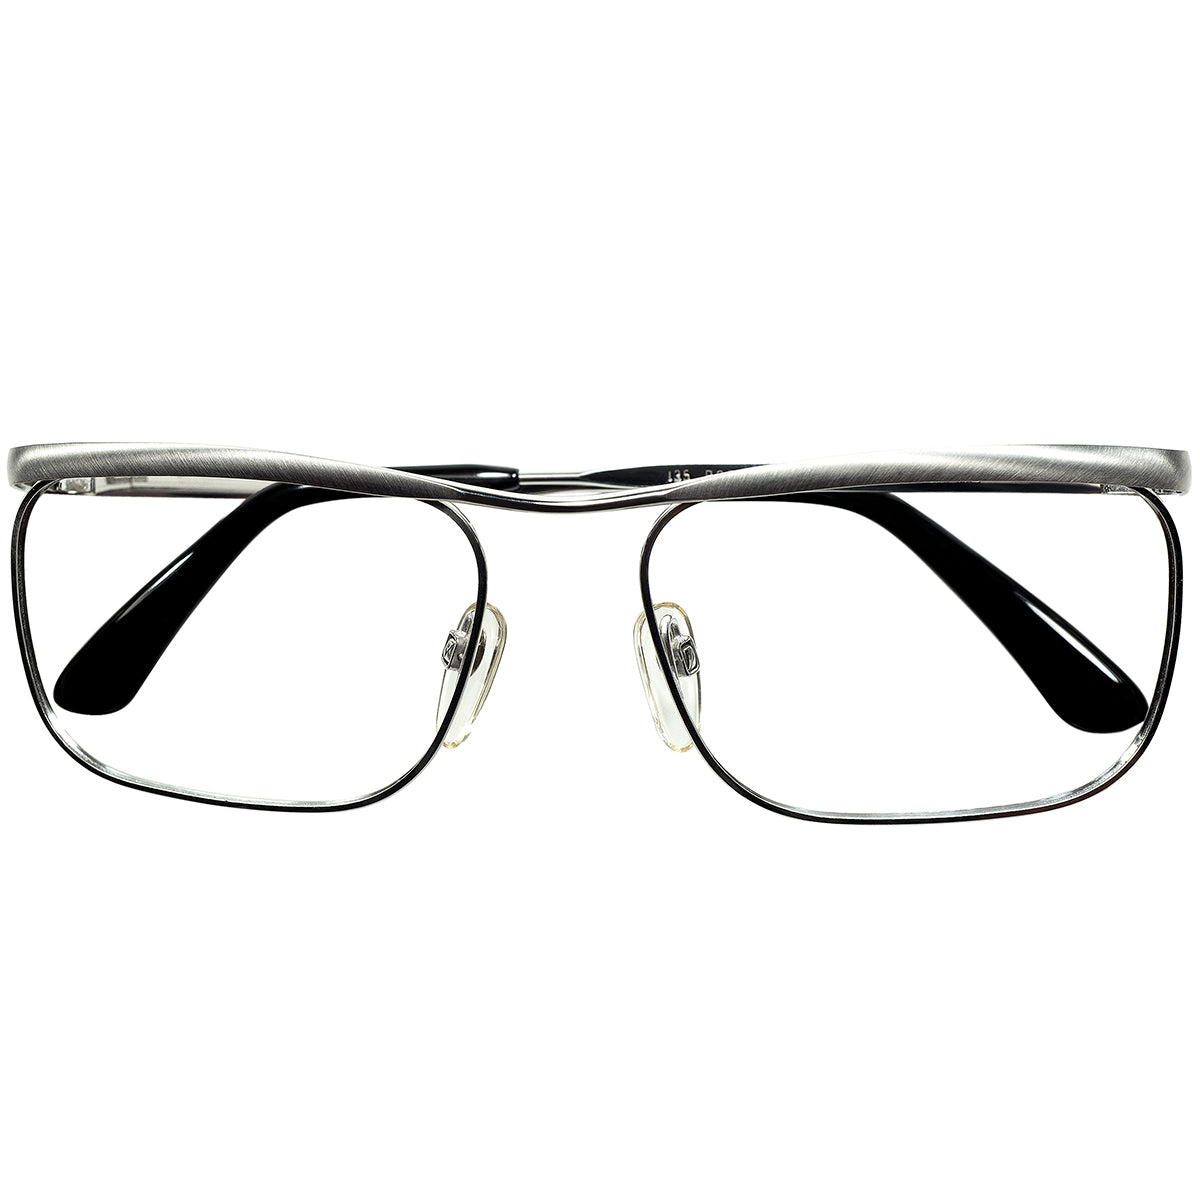 歴史に残る傑作モデル 1960s-70s デッドストック 西ドイツ製オリジナル RODENSTOCK ローデンストック CARLTON FLACH  カールトン 1/20 10K金張 size54/16 ビンテージ ヴィンテージ 眼鏡 メガネ 【a9226】